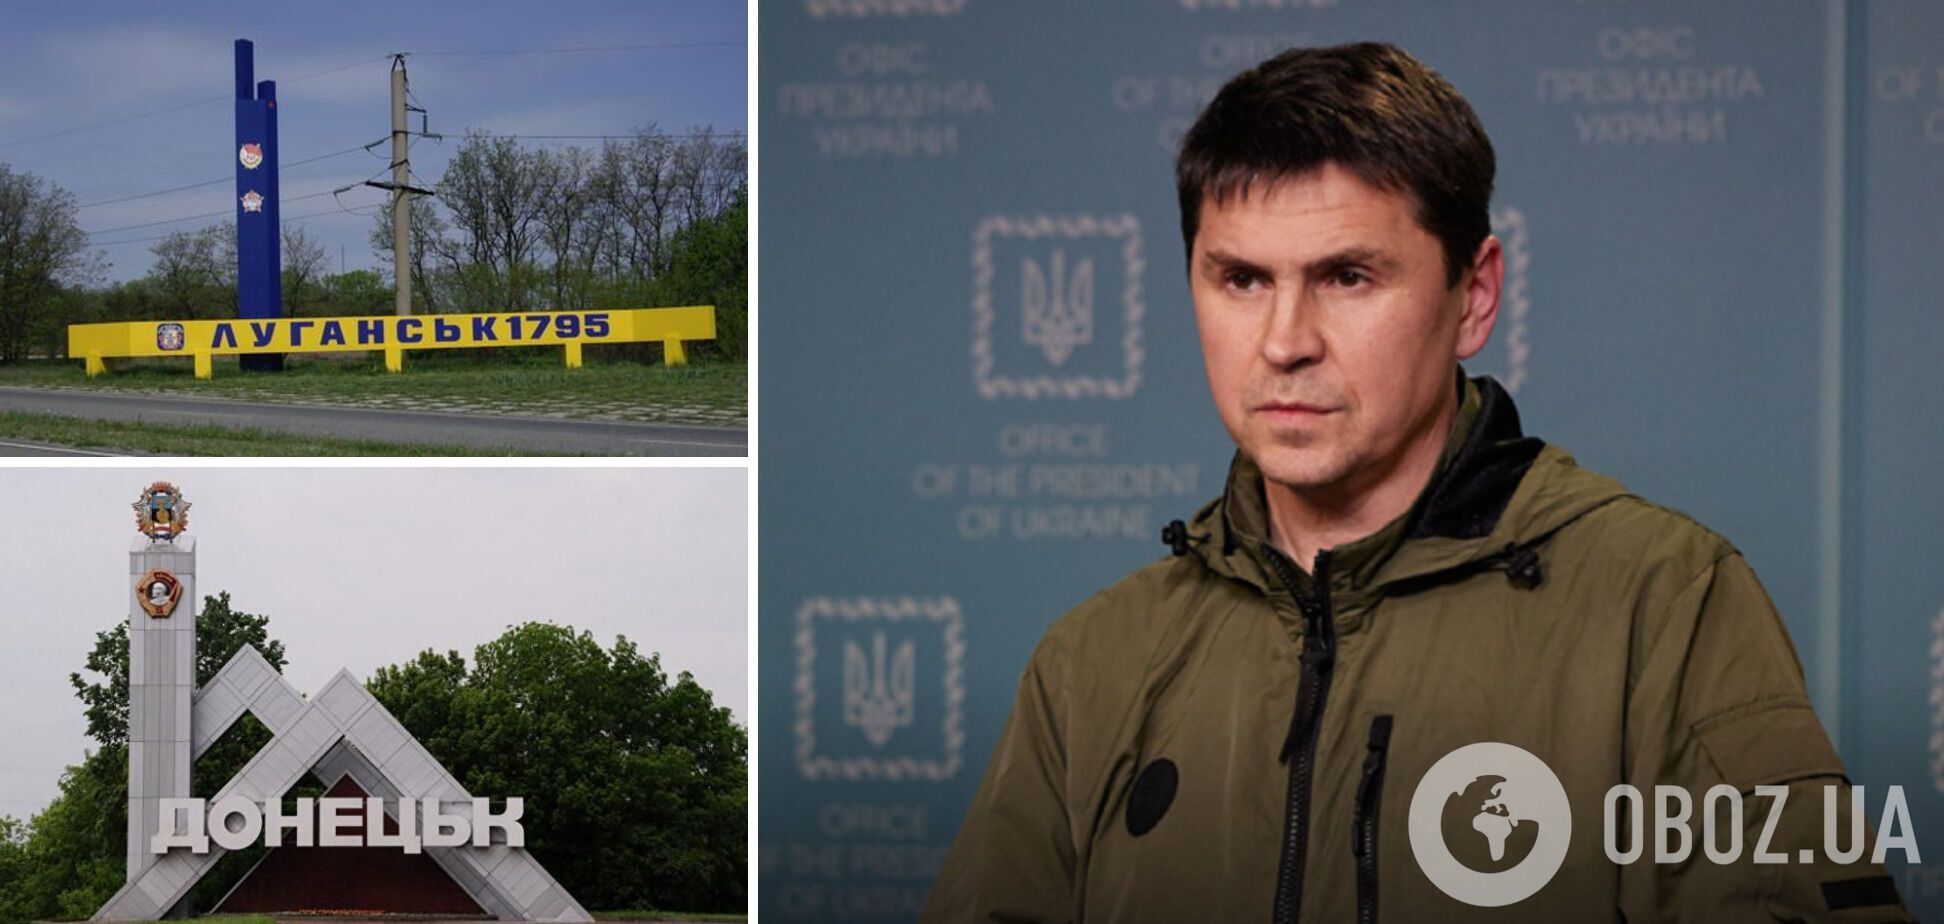 Перелом в войне наступит после освобождения Донецка или Луганска